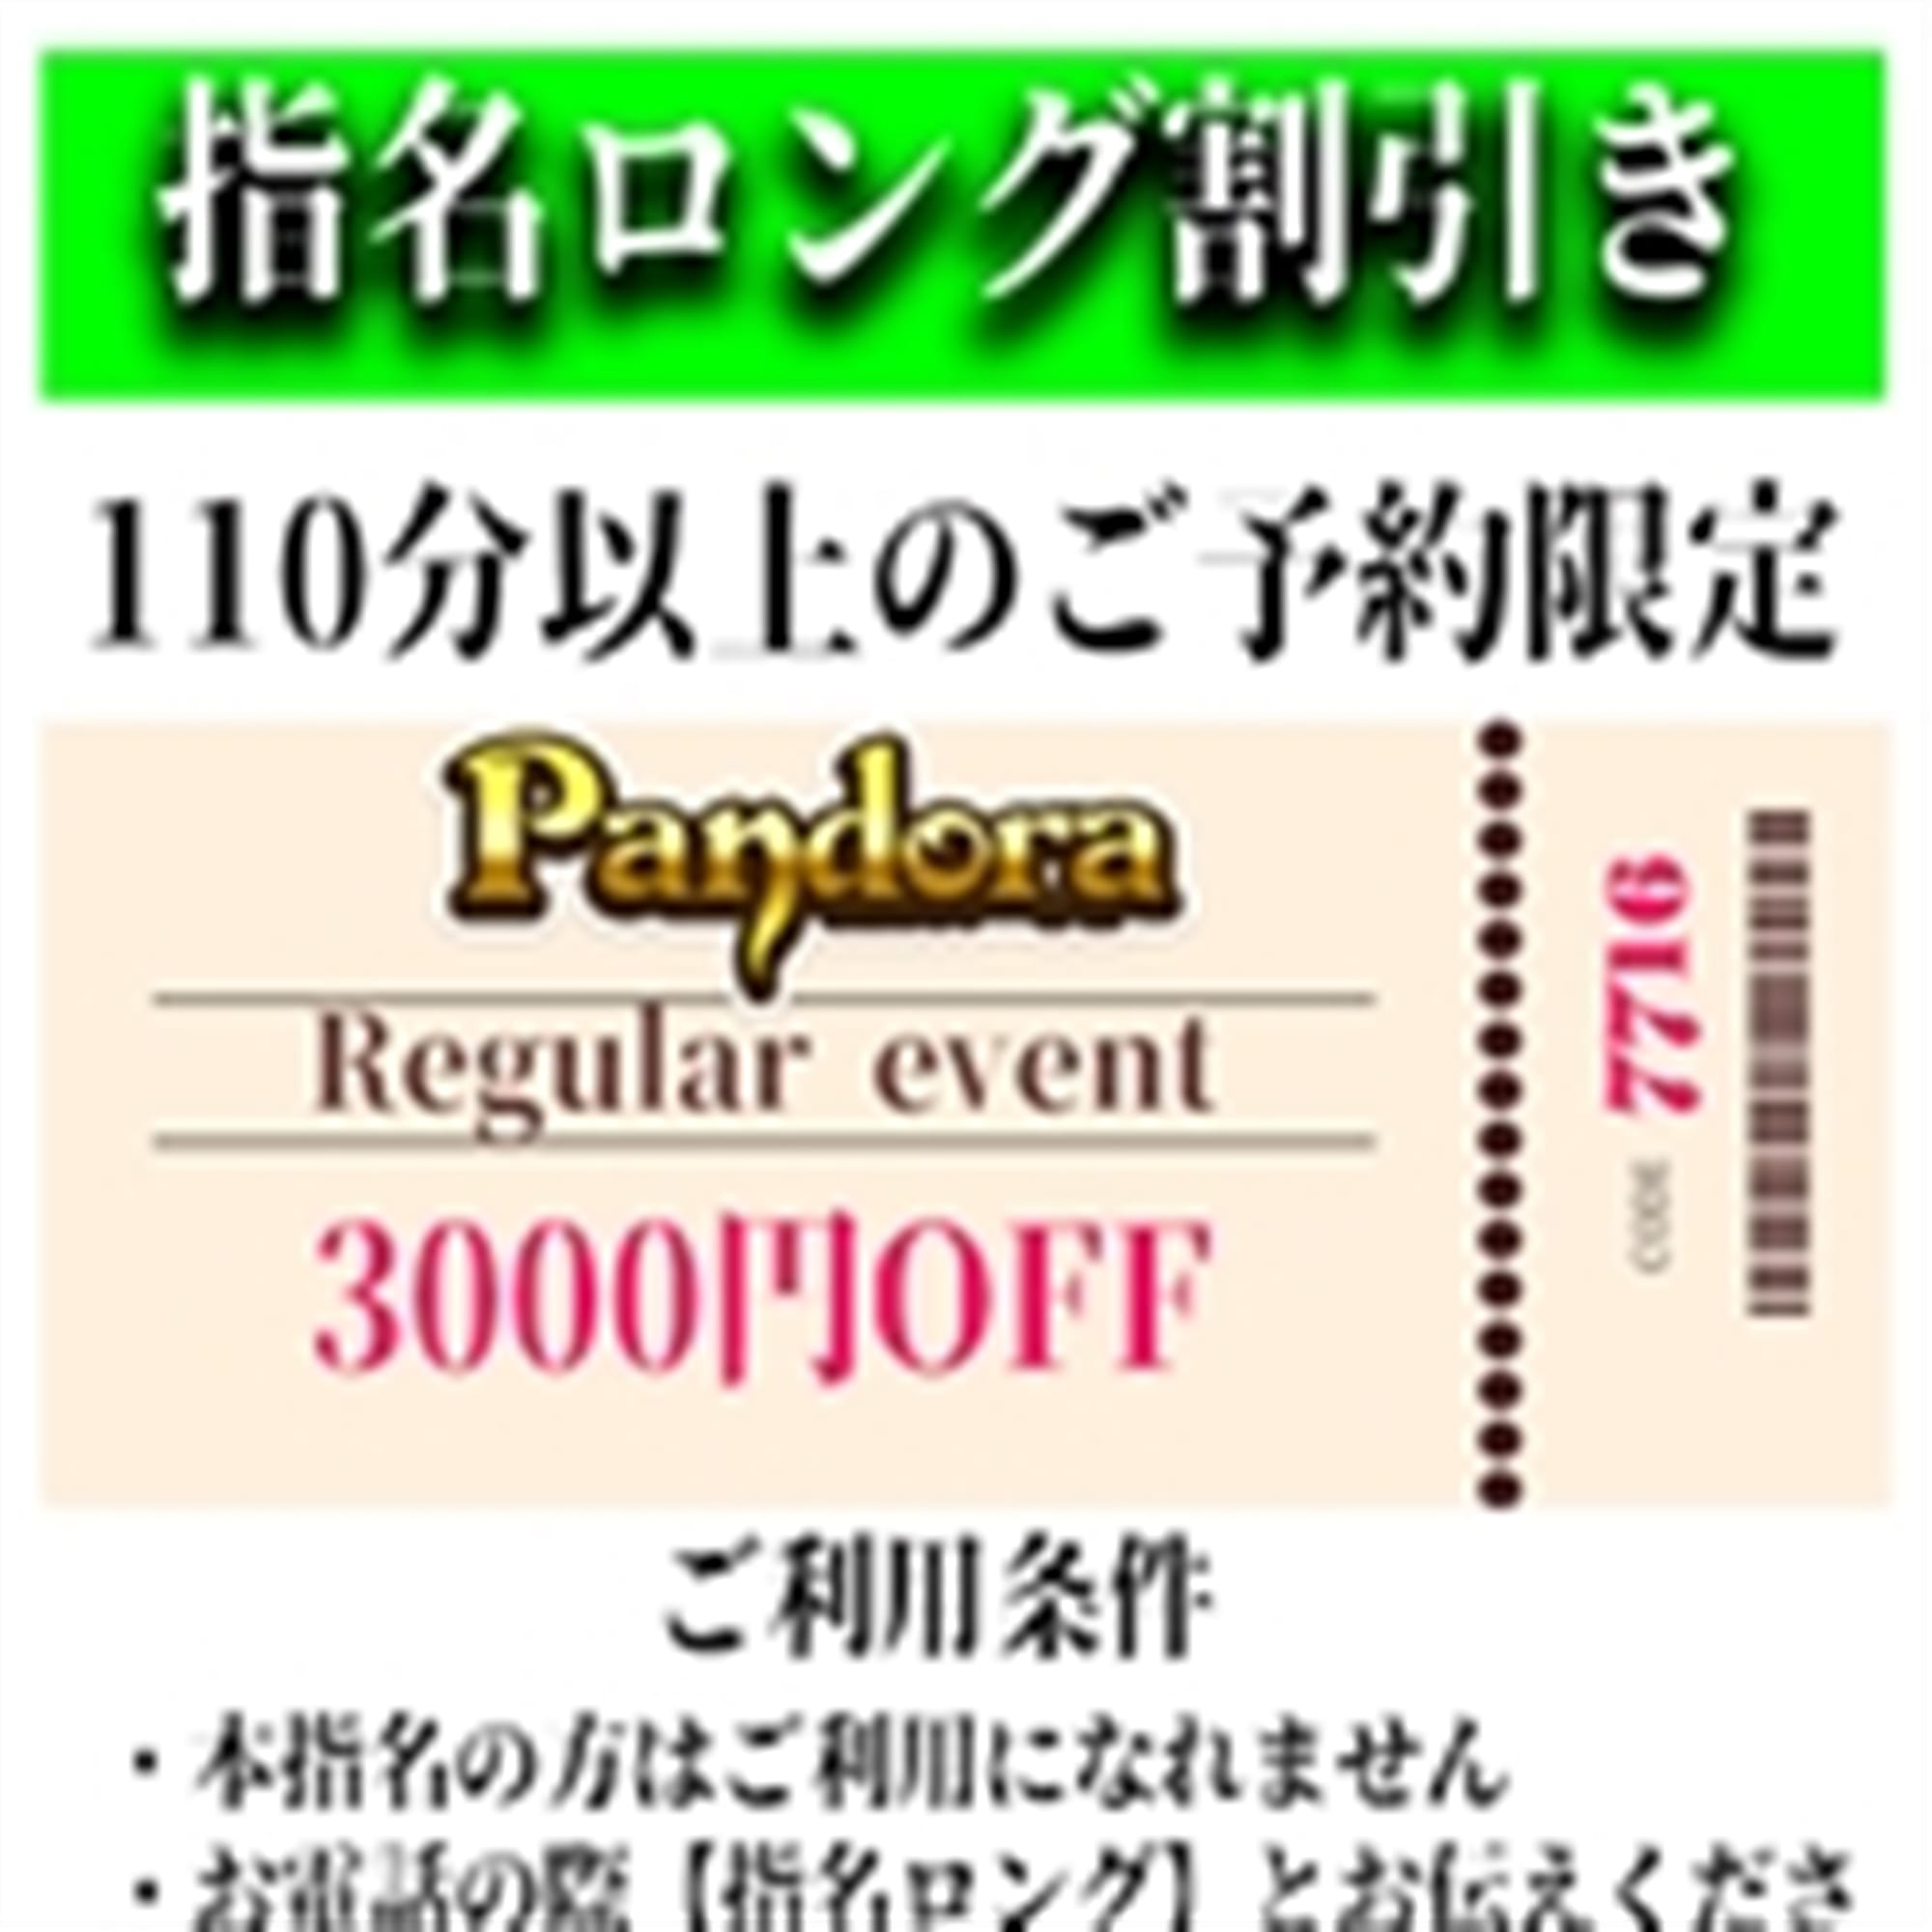 「ご指名のお客様も遊べるロングコース割引」03/29(金) 09:33 | Pandora(パンドラ)新潟のお得なニュース